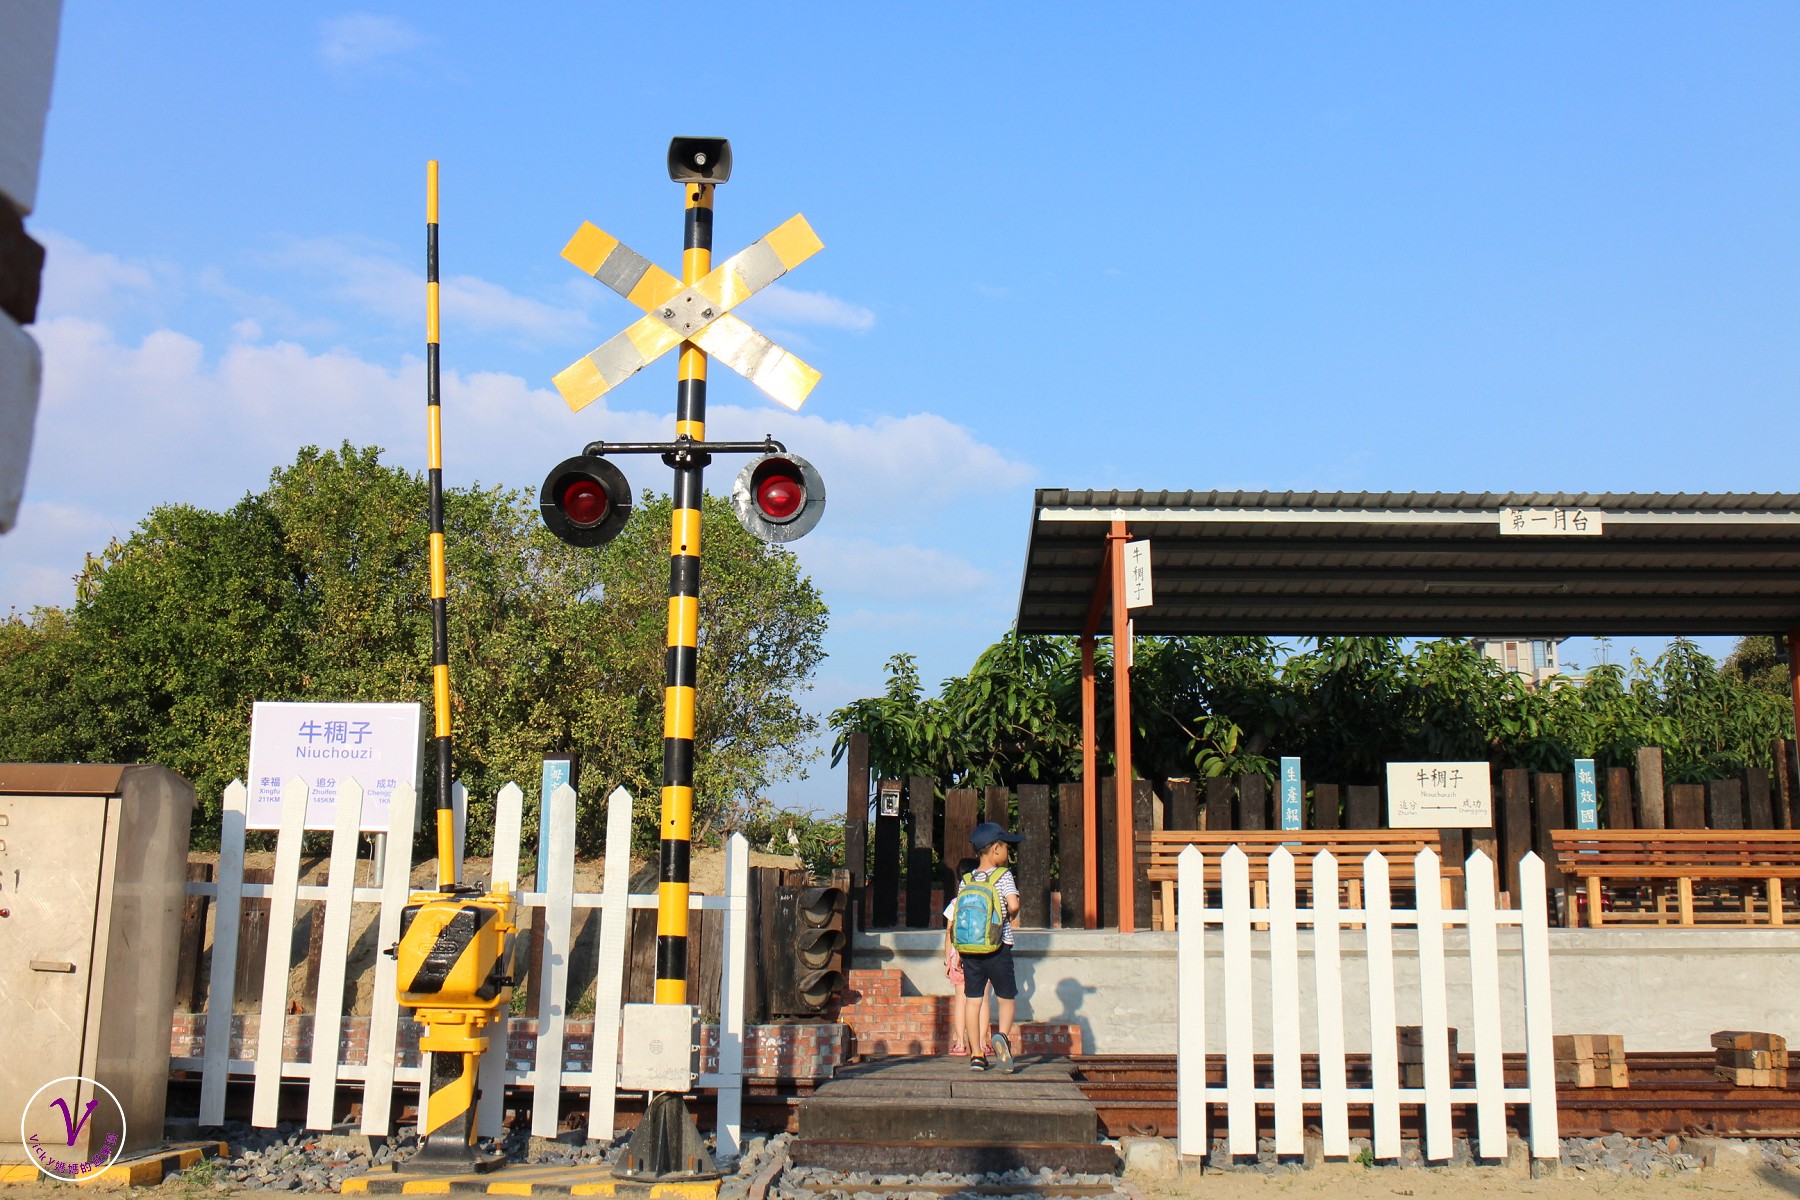 台南最新公園︱鐵支路公園、牛稠仔車站：古老月台、戒嚴標語、特色造景，一起來成功里追分吧